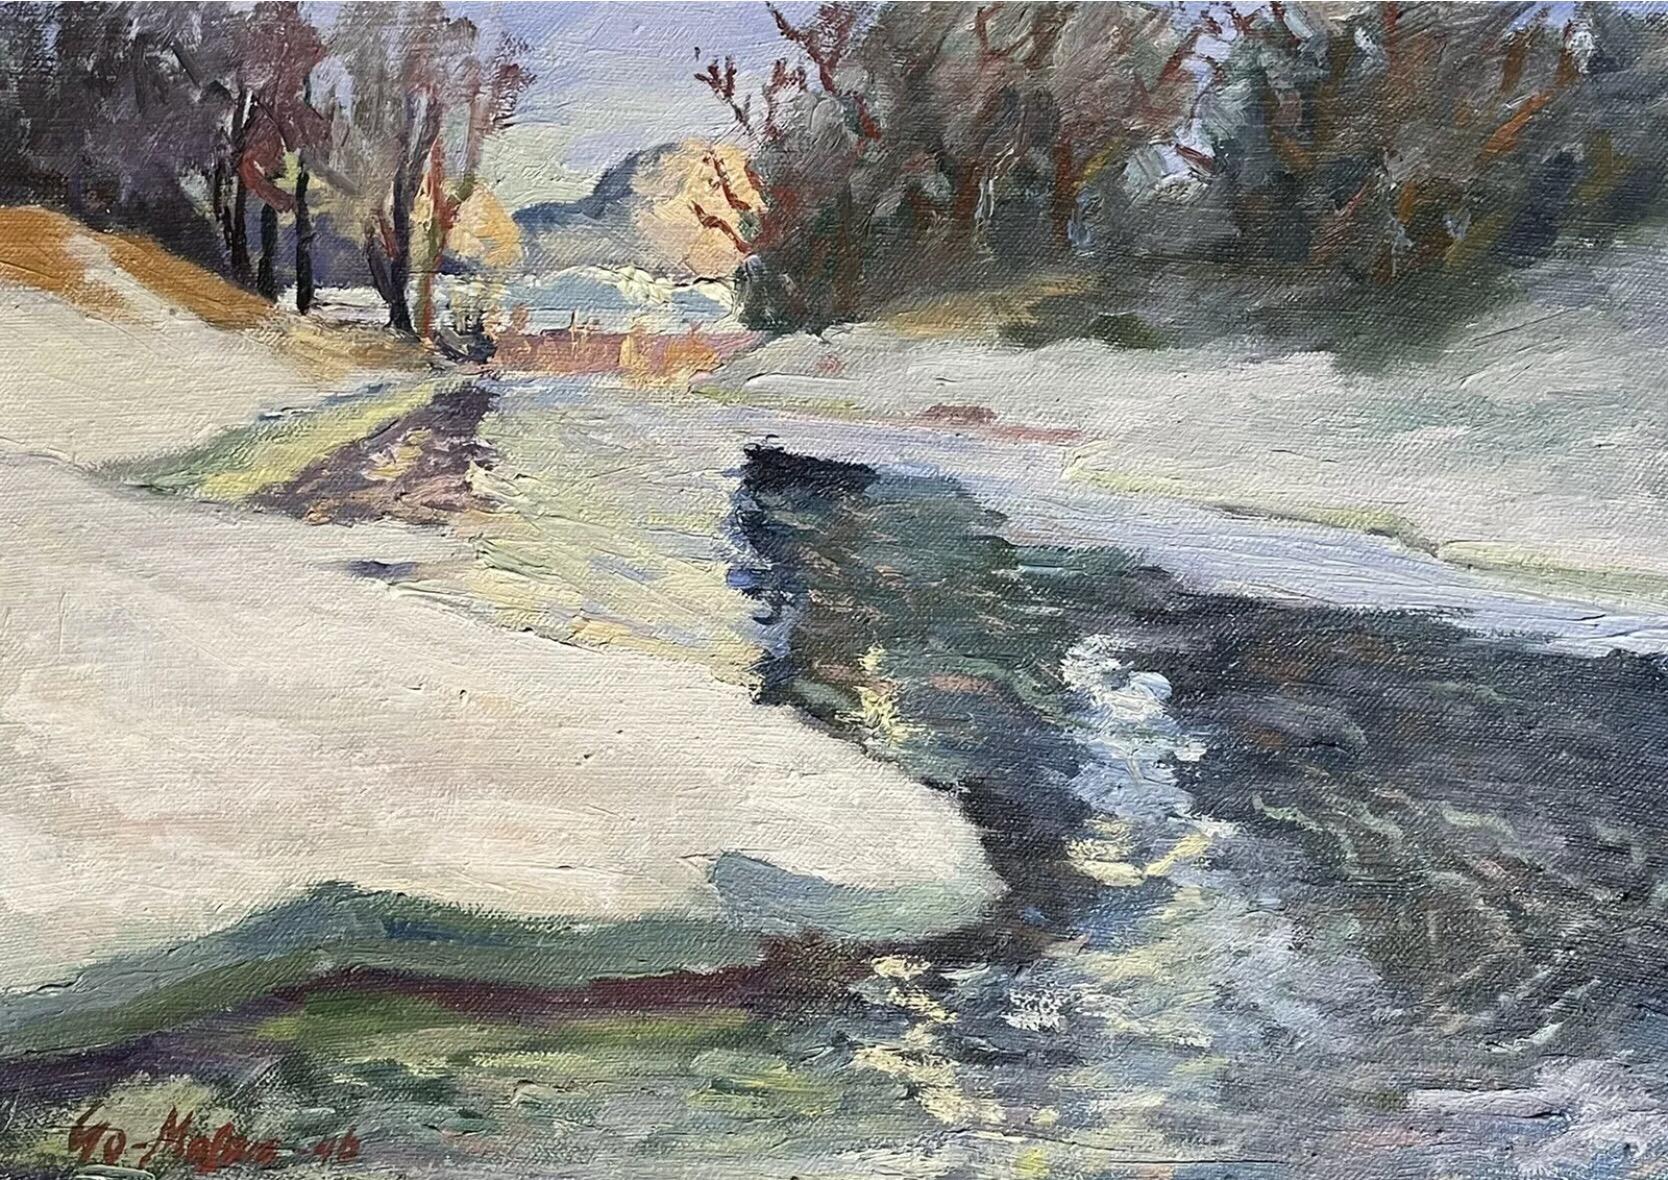 Swedish signed Landscape Painting - 1940s Swedish Signed Oil Painting - Winter Snow River Landscape - Framed